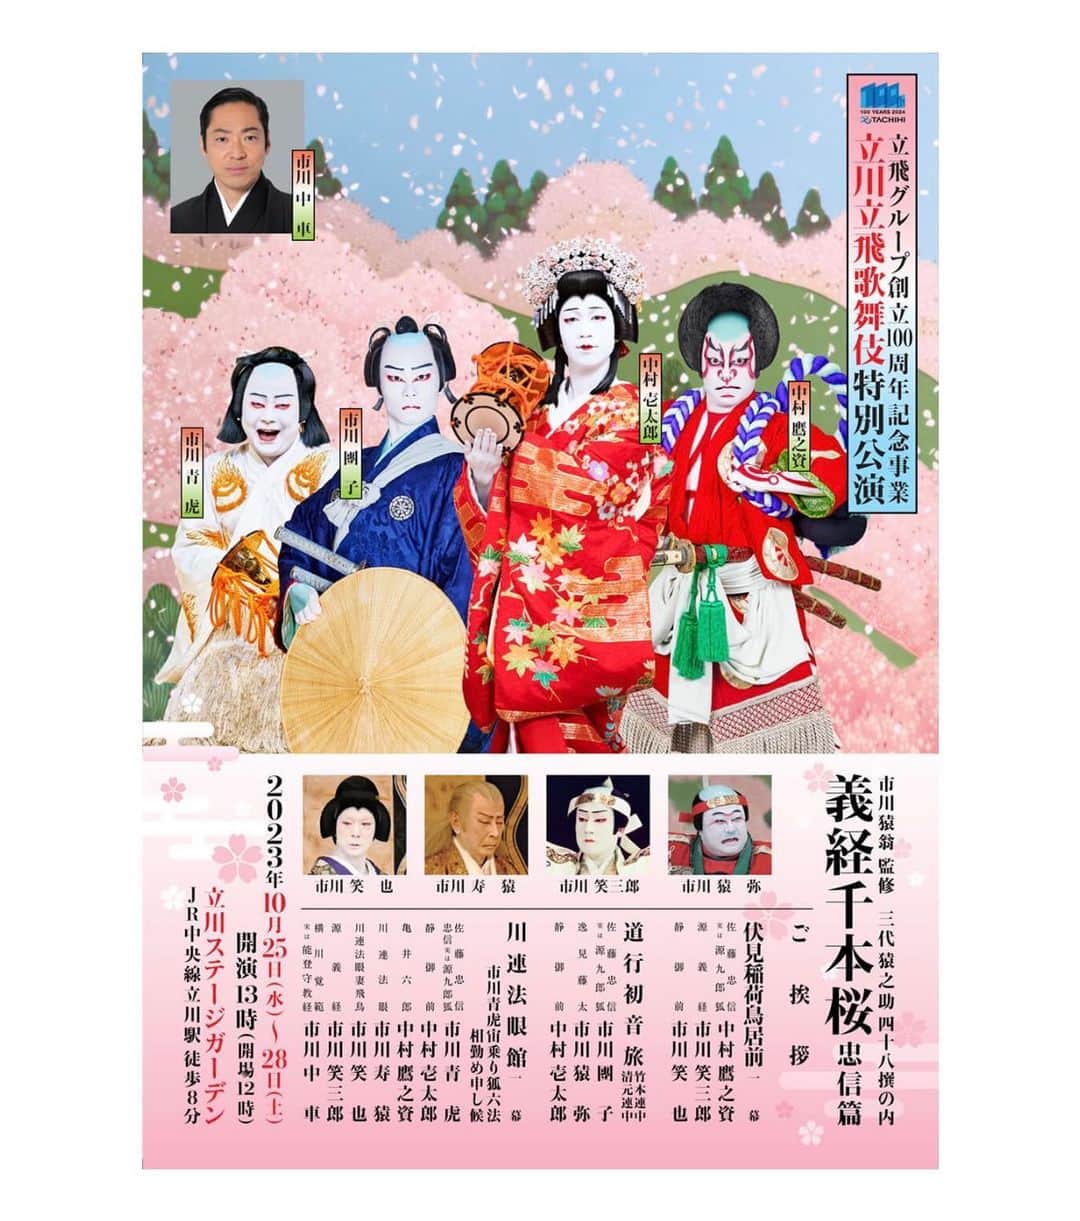 市川團子のインスタグラム：「皆さま、こんにちは。市川團子でございます。  この度、10月25日から28日まで行われる立川立飛歌舞伎特別公演にて『道行初音旅』に出演させていただきます。  皆様のご来場を心よりお待ちしております。  #立川立飛歌舞伎特別公演 #道行初音旅 #歌舞伎 #kabuki #市川團子」